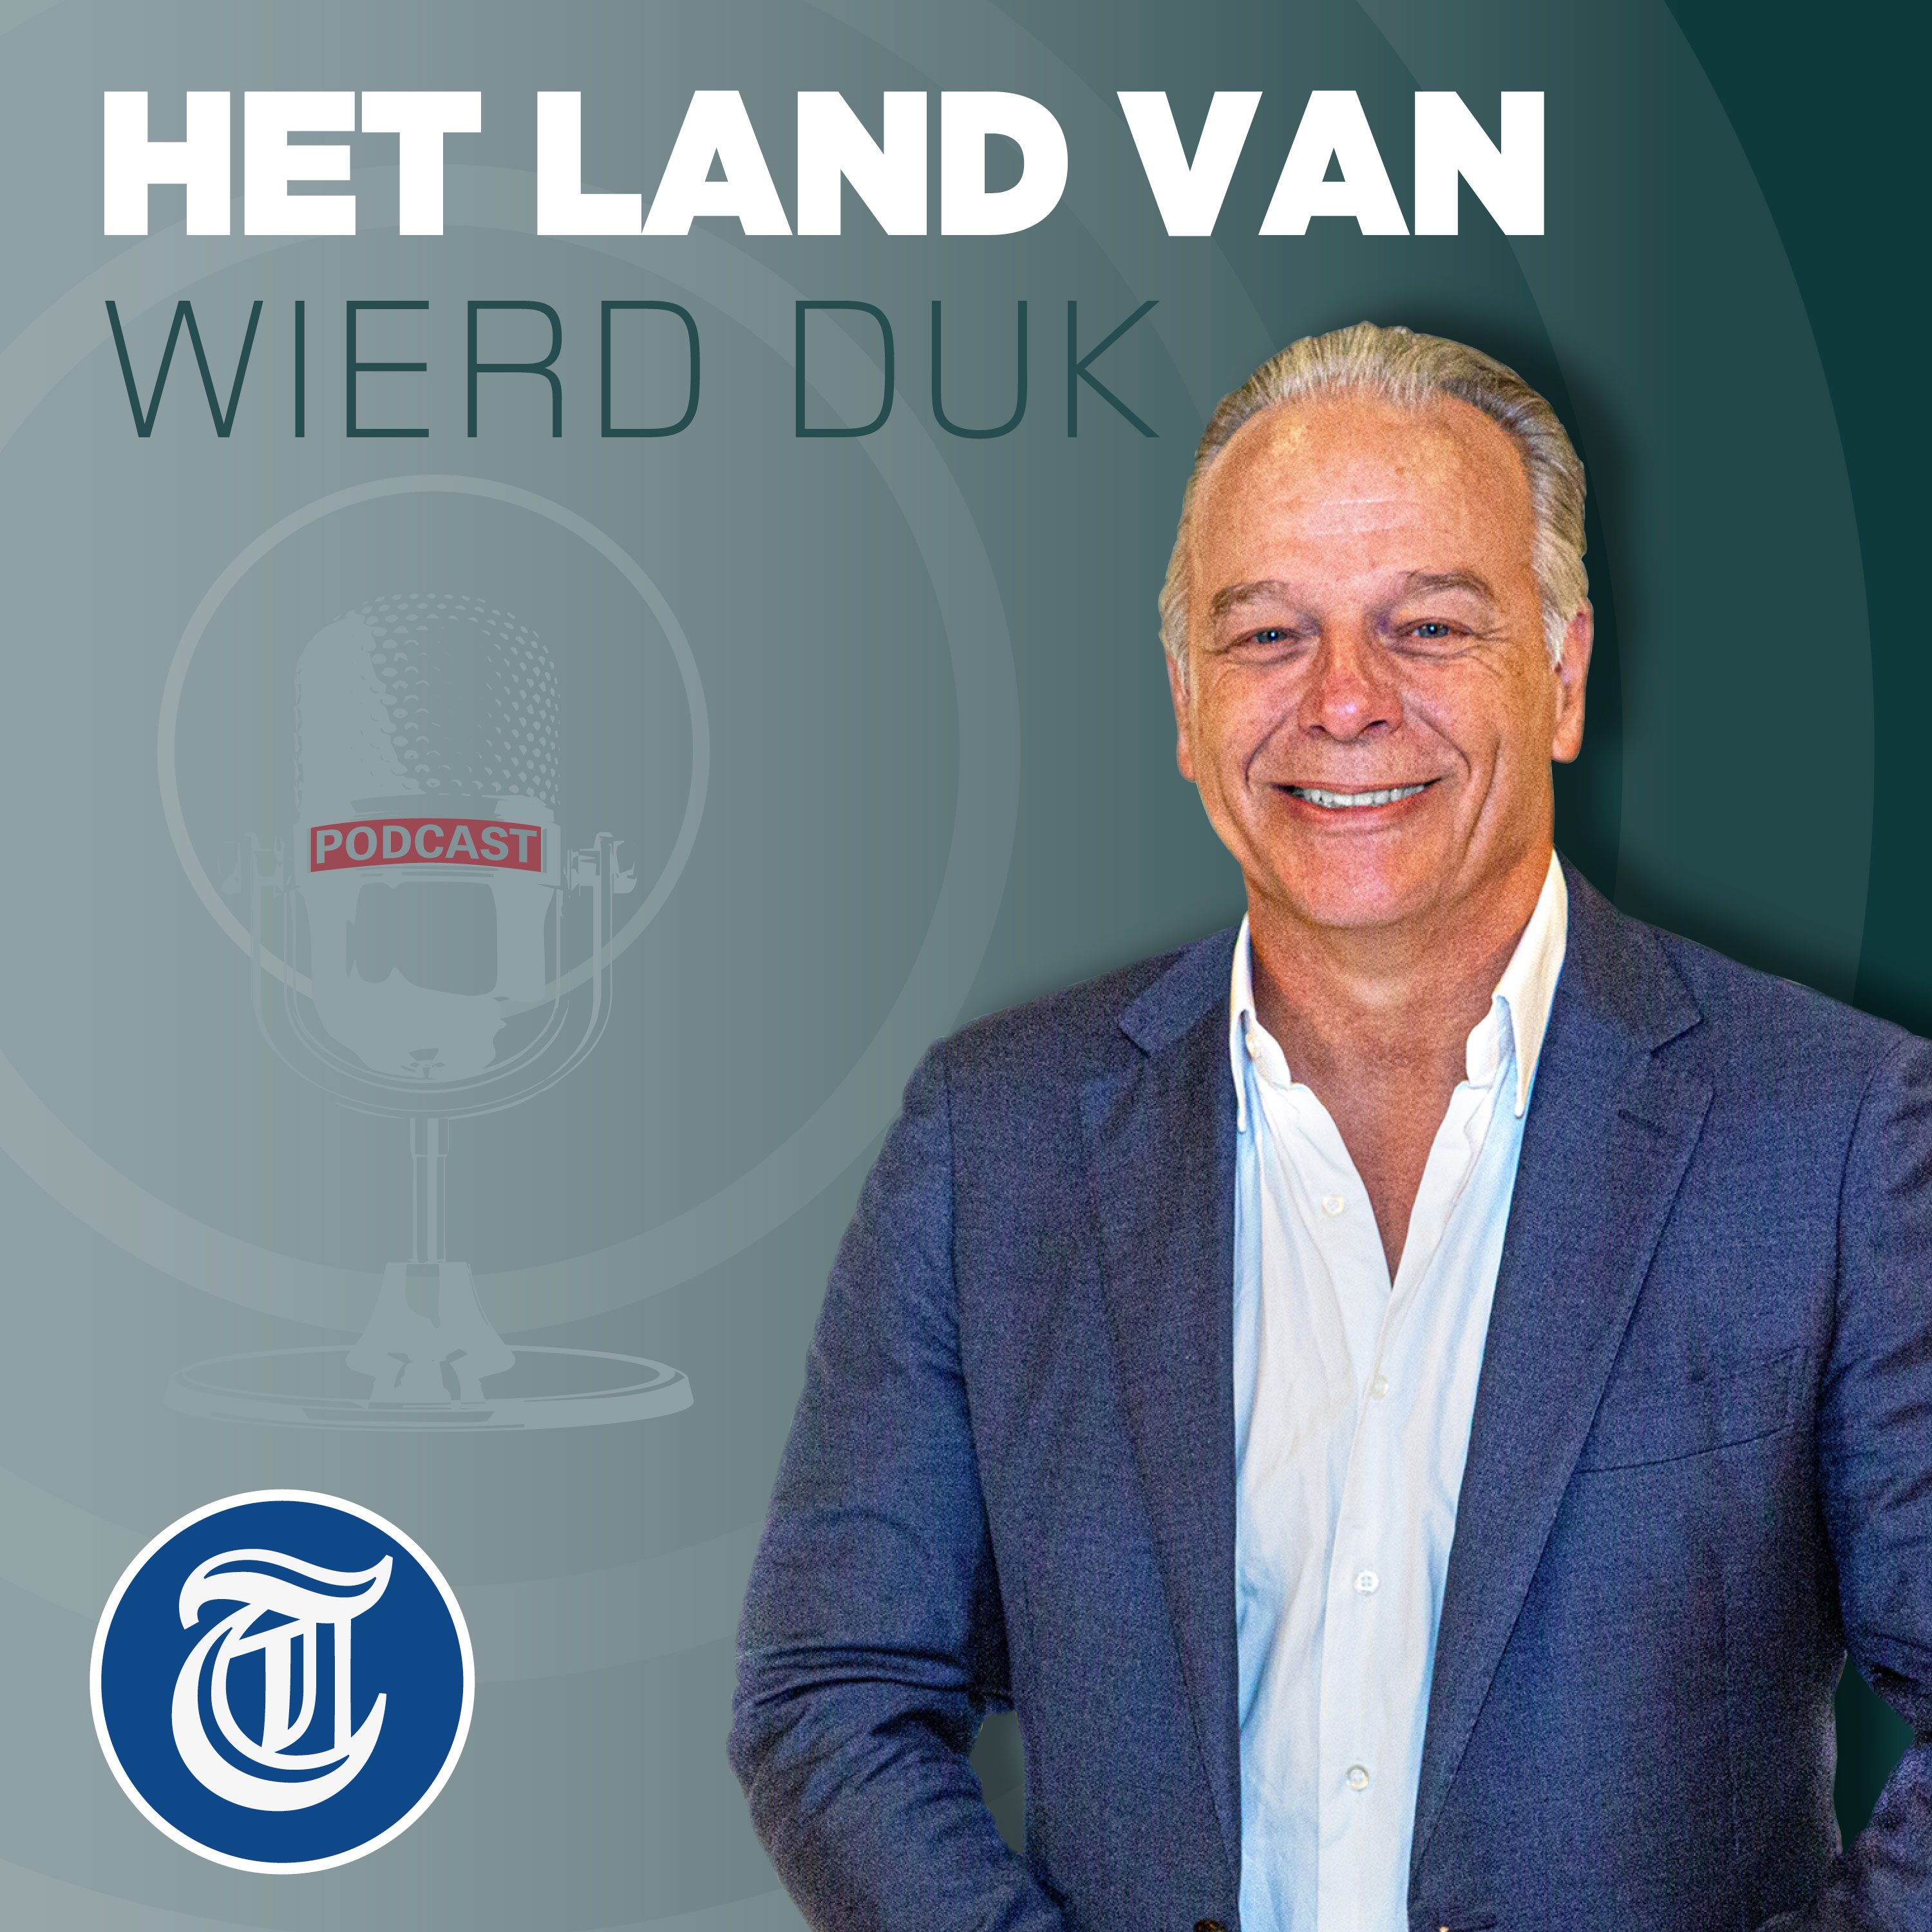 ‘Divers’ Nederland snoert rechts de mond: ‘Jullie zijn verbonden door haat’